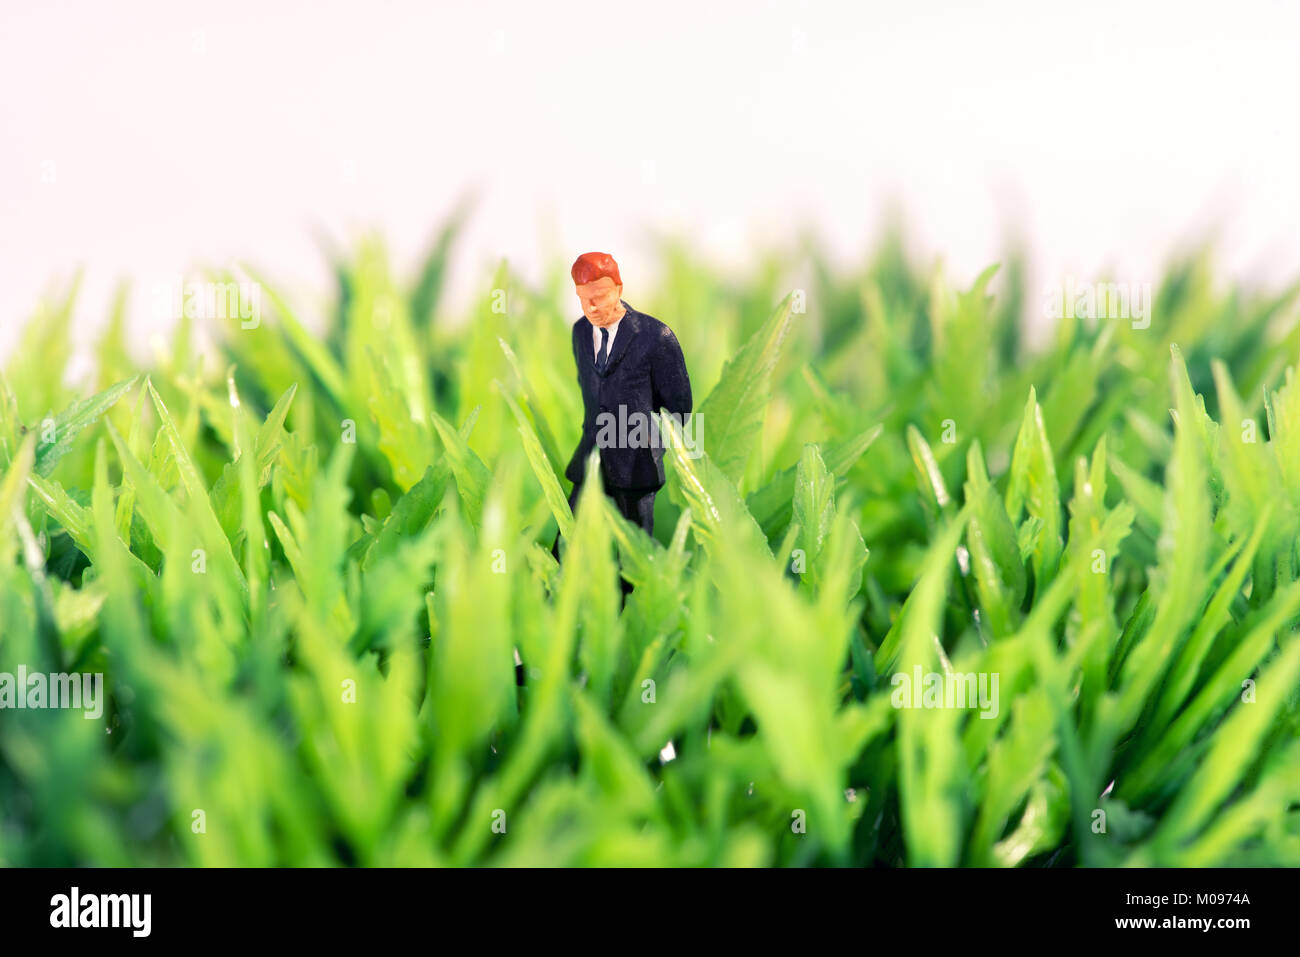 Miniatura de la figura de un hombre de negocios de pie en el pasto verde pensando en busca de inspiración e ideas Foto de stock